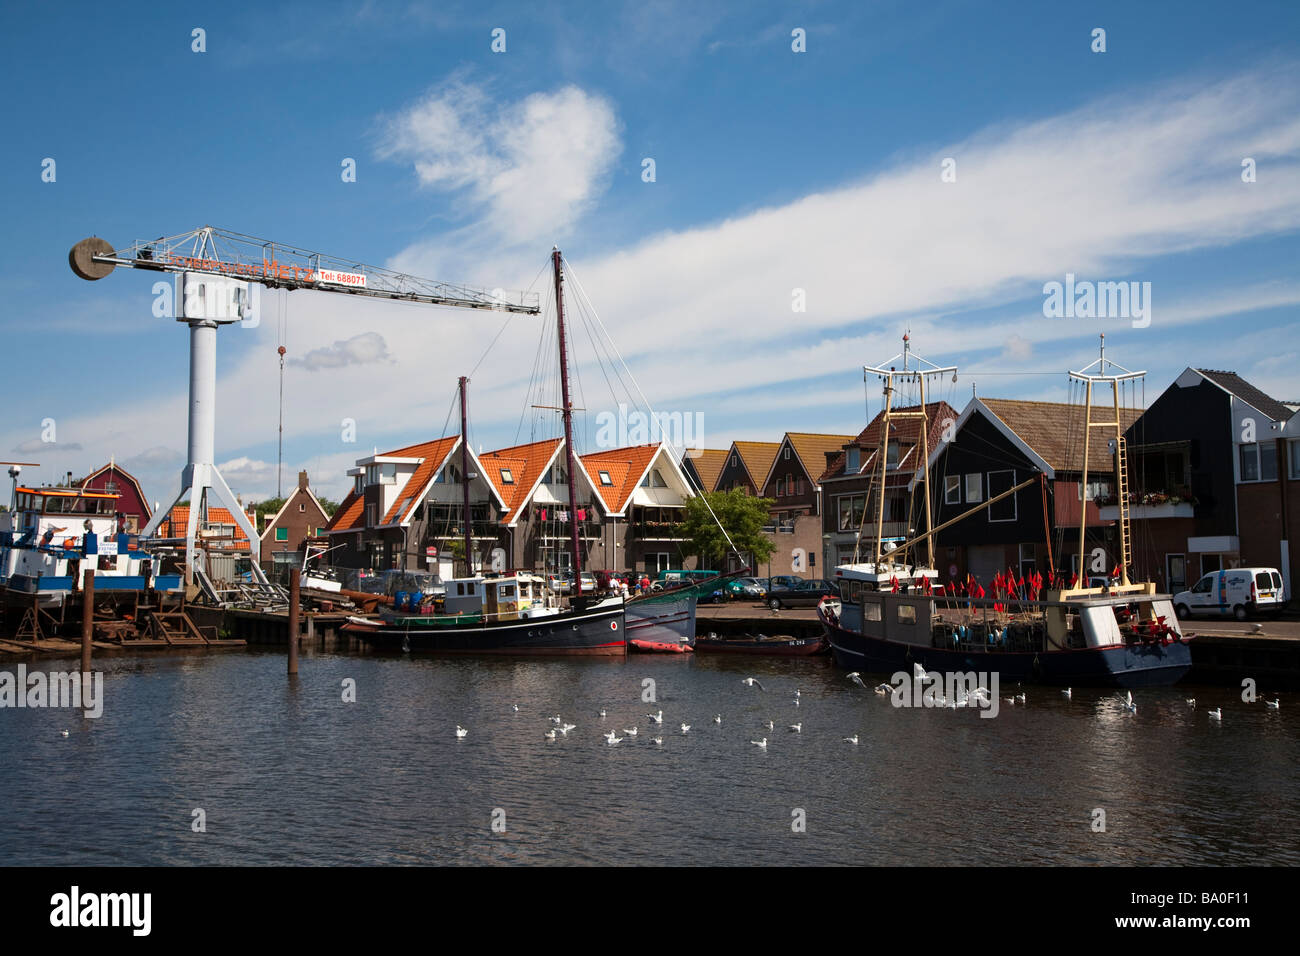 Angelboote/Fischerboote im Hafen mit modernen Häusern Urk Niederlande Stockfoto